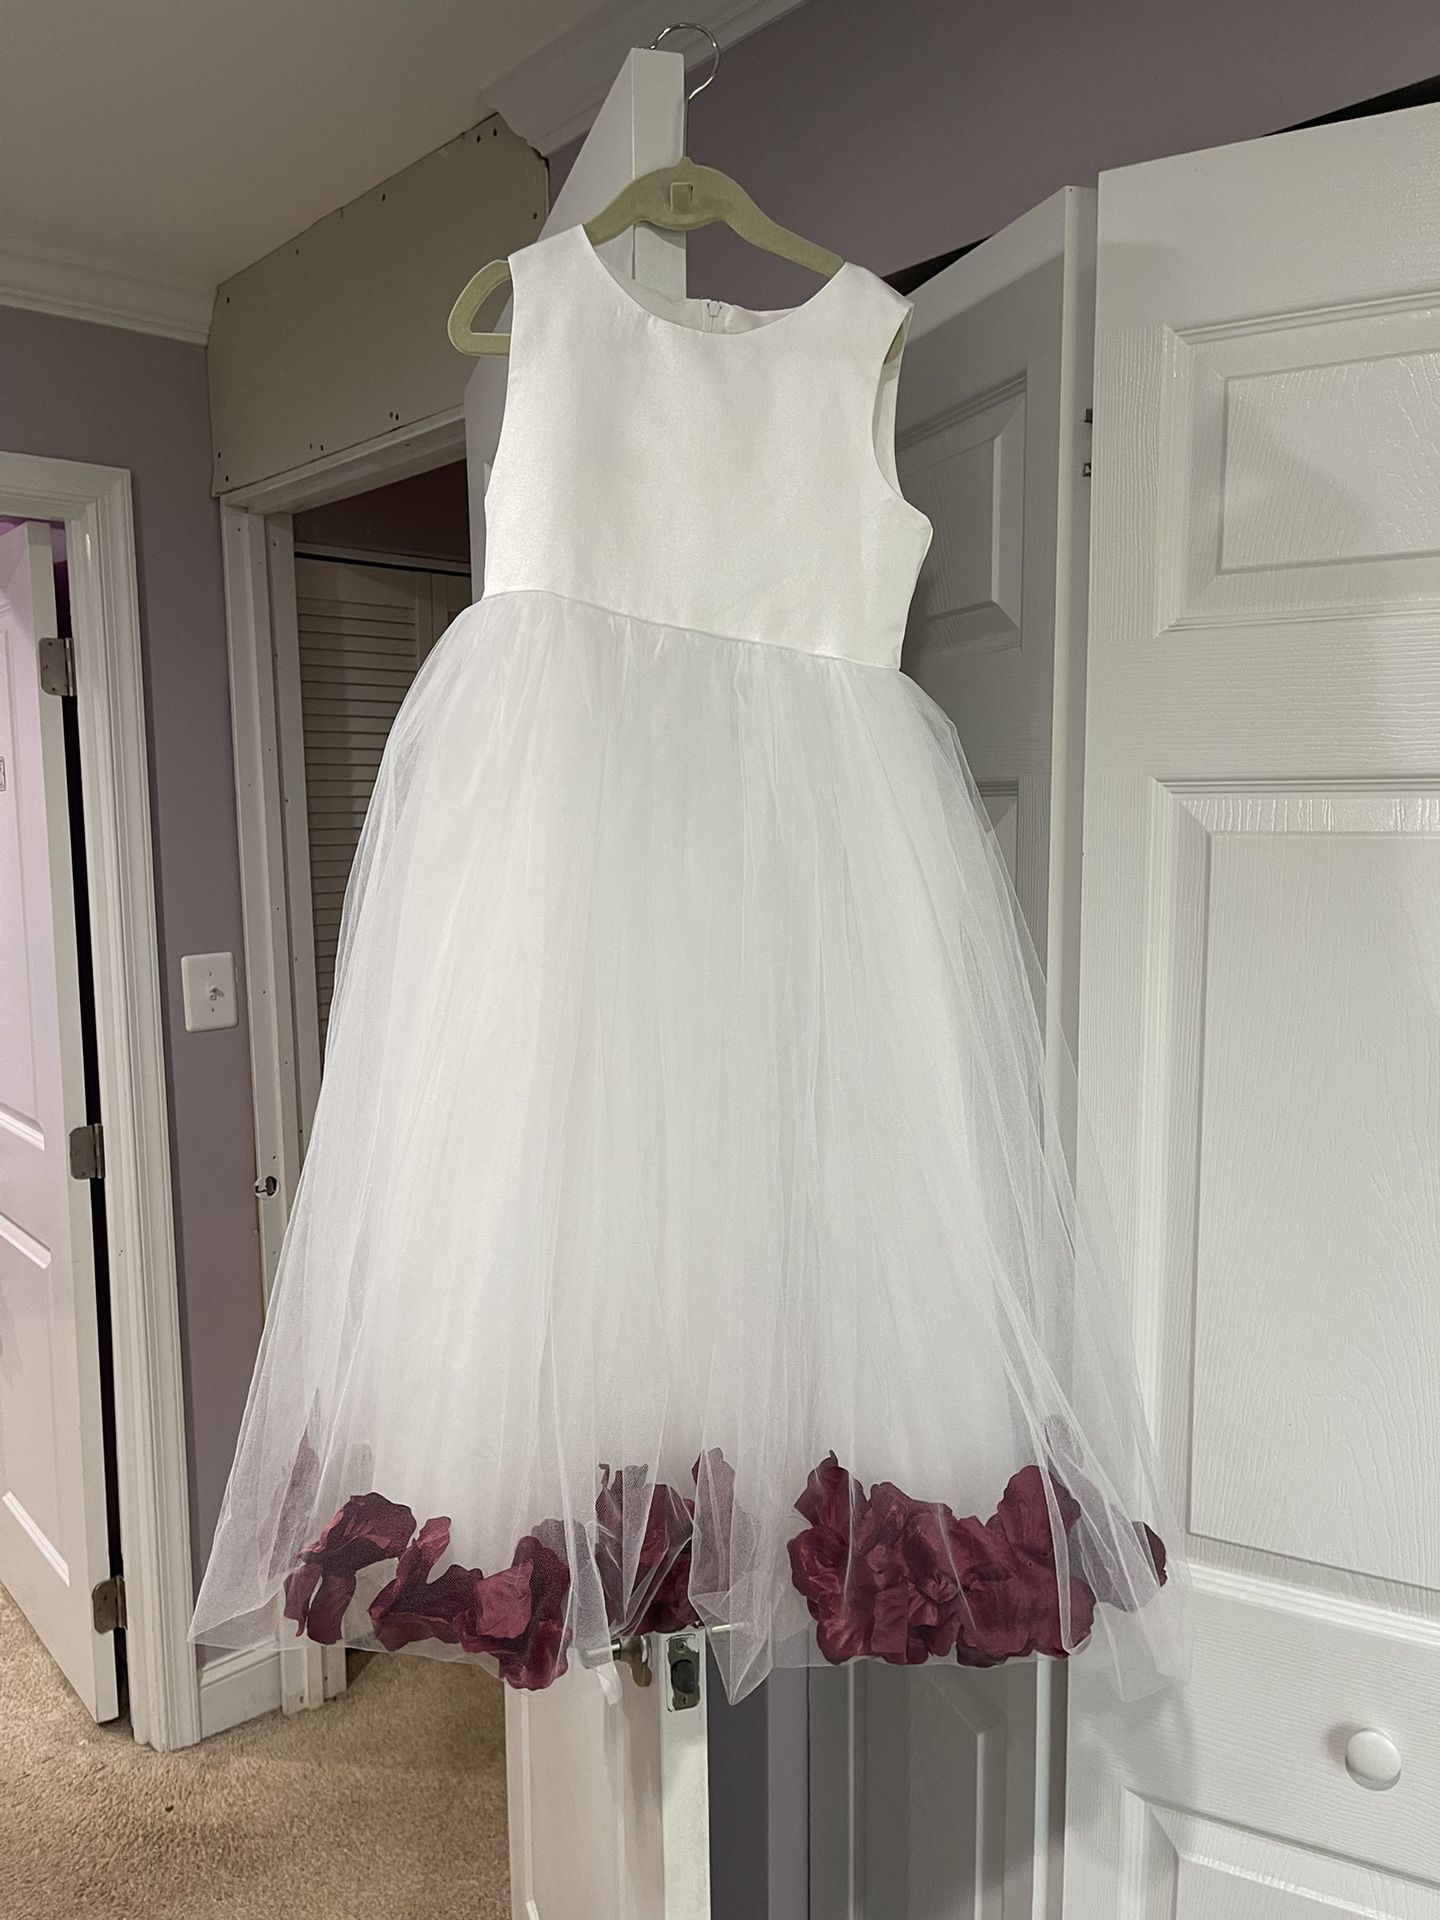 White Floral Rose Petal Dress For Girl 